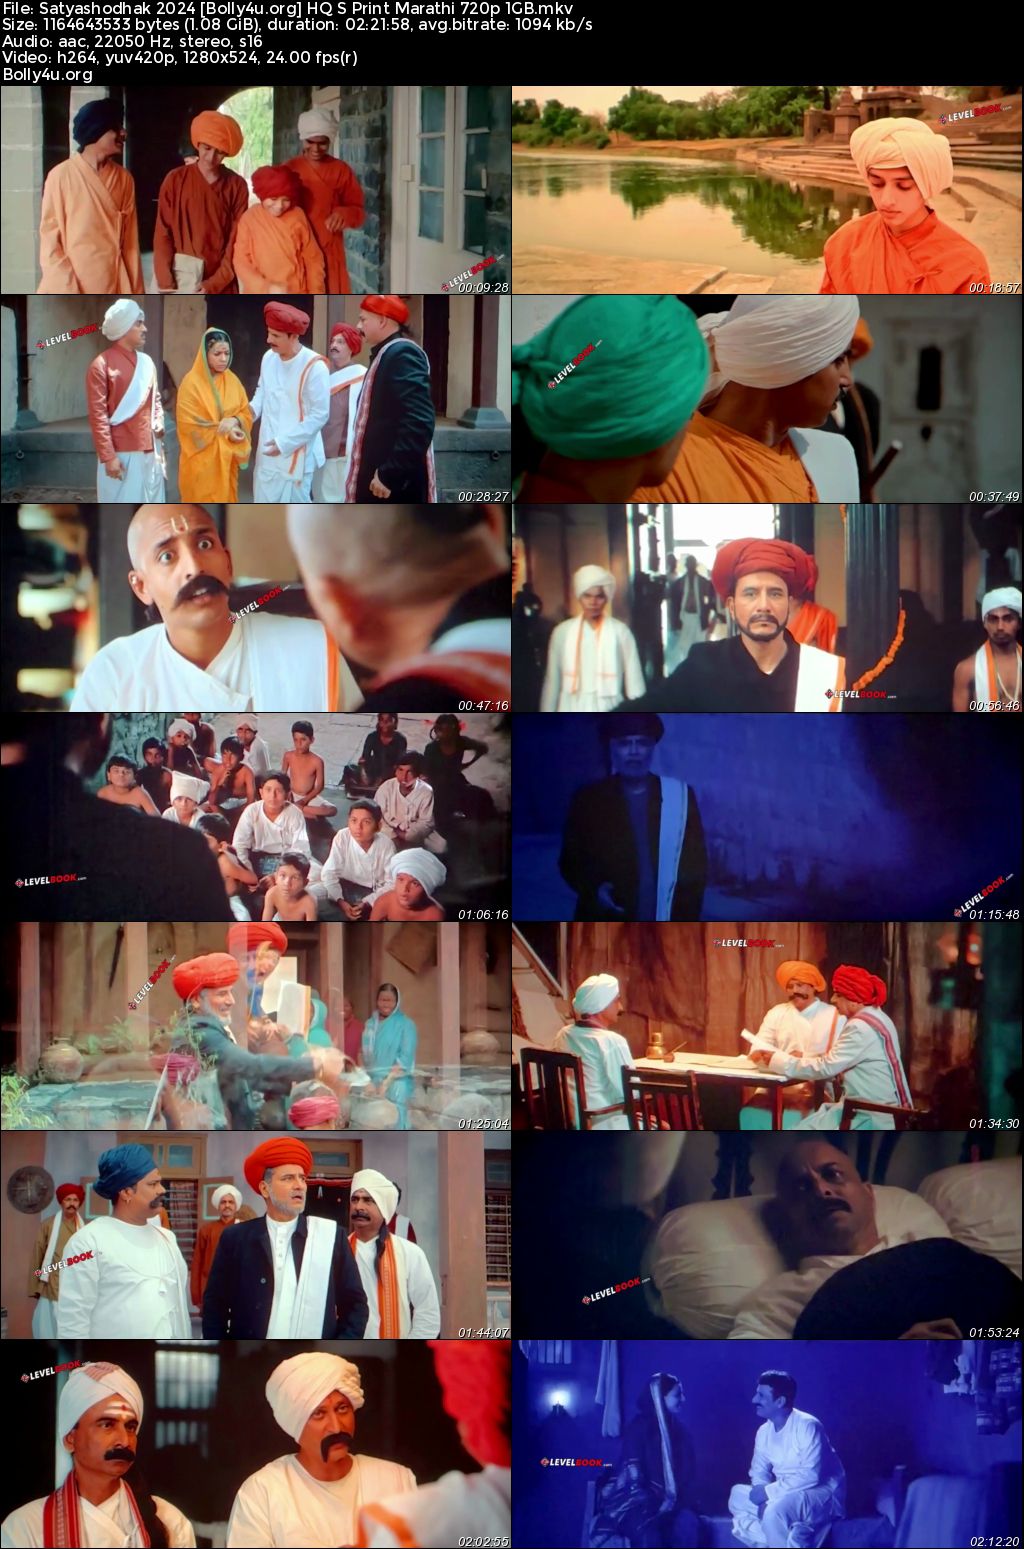 Satyashodhak 2024 HQ S Print Marathi Full Movie Download 720p 480p